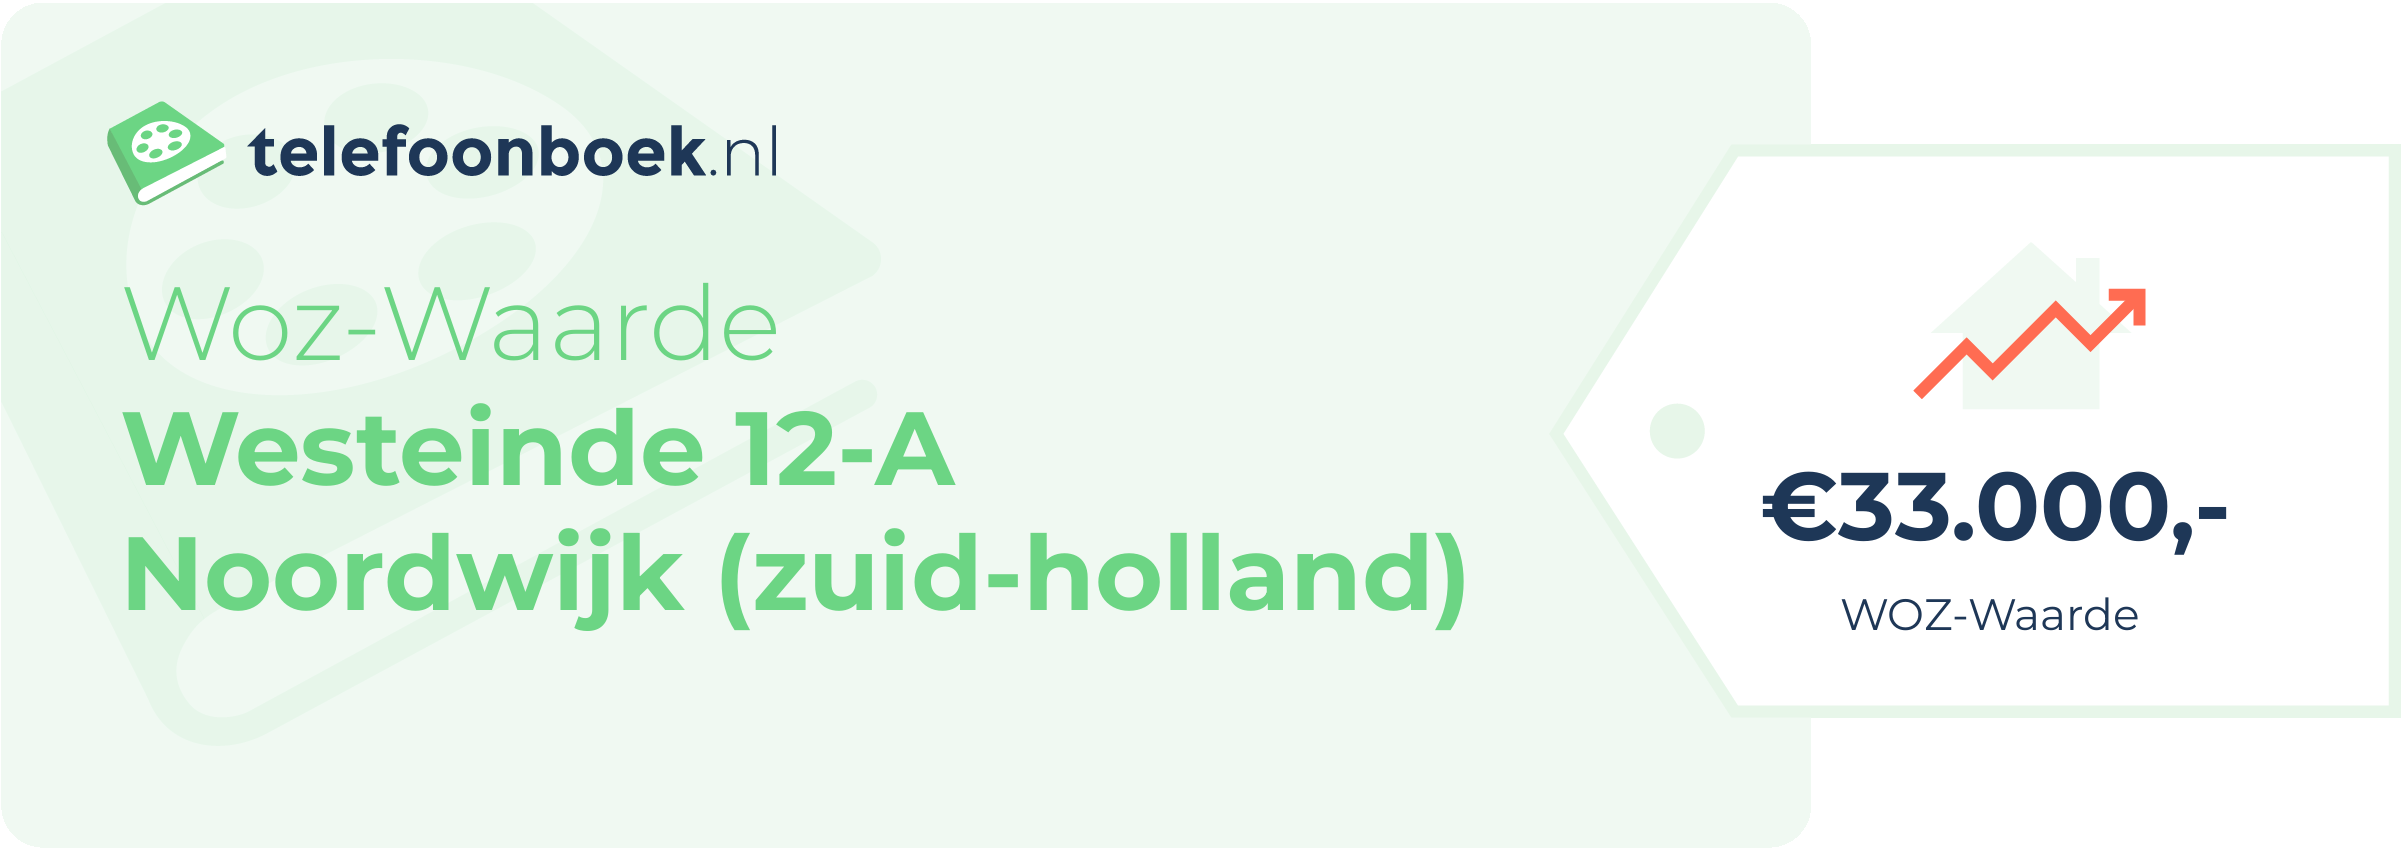 WOZ-waarde Westeinde 12-A Noordwijk (Zuid-Holland)